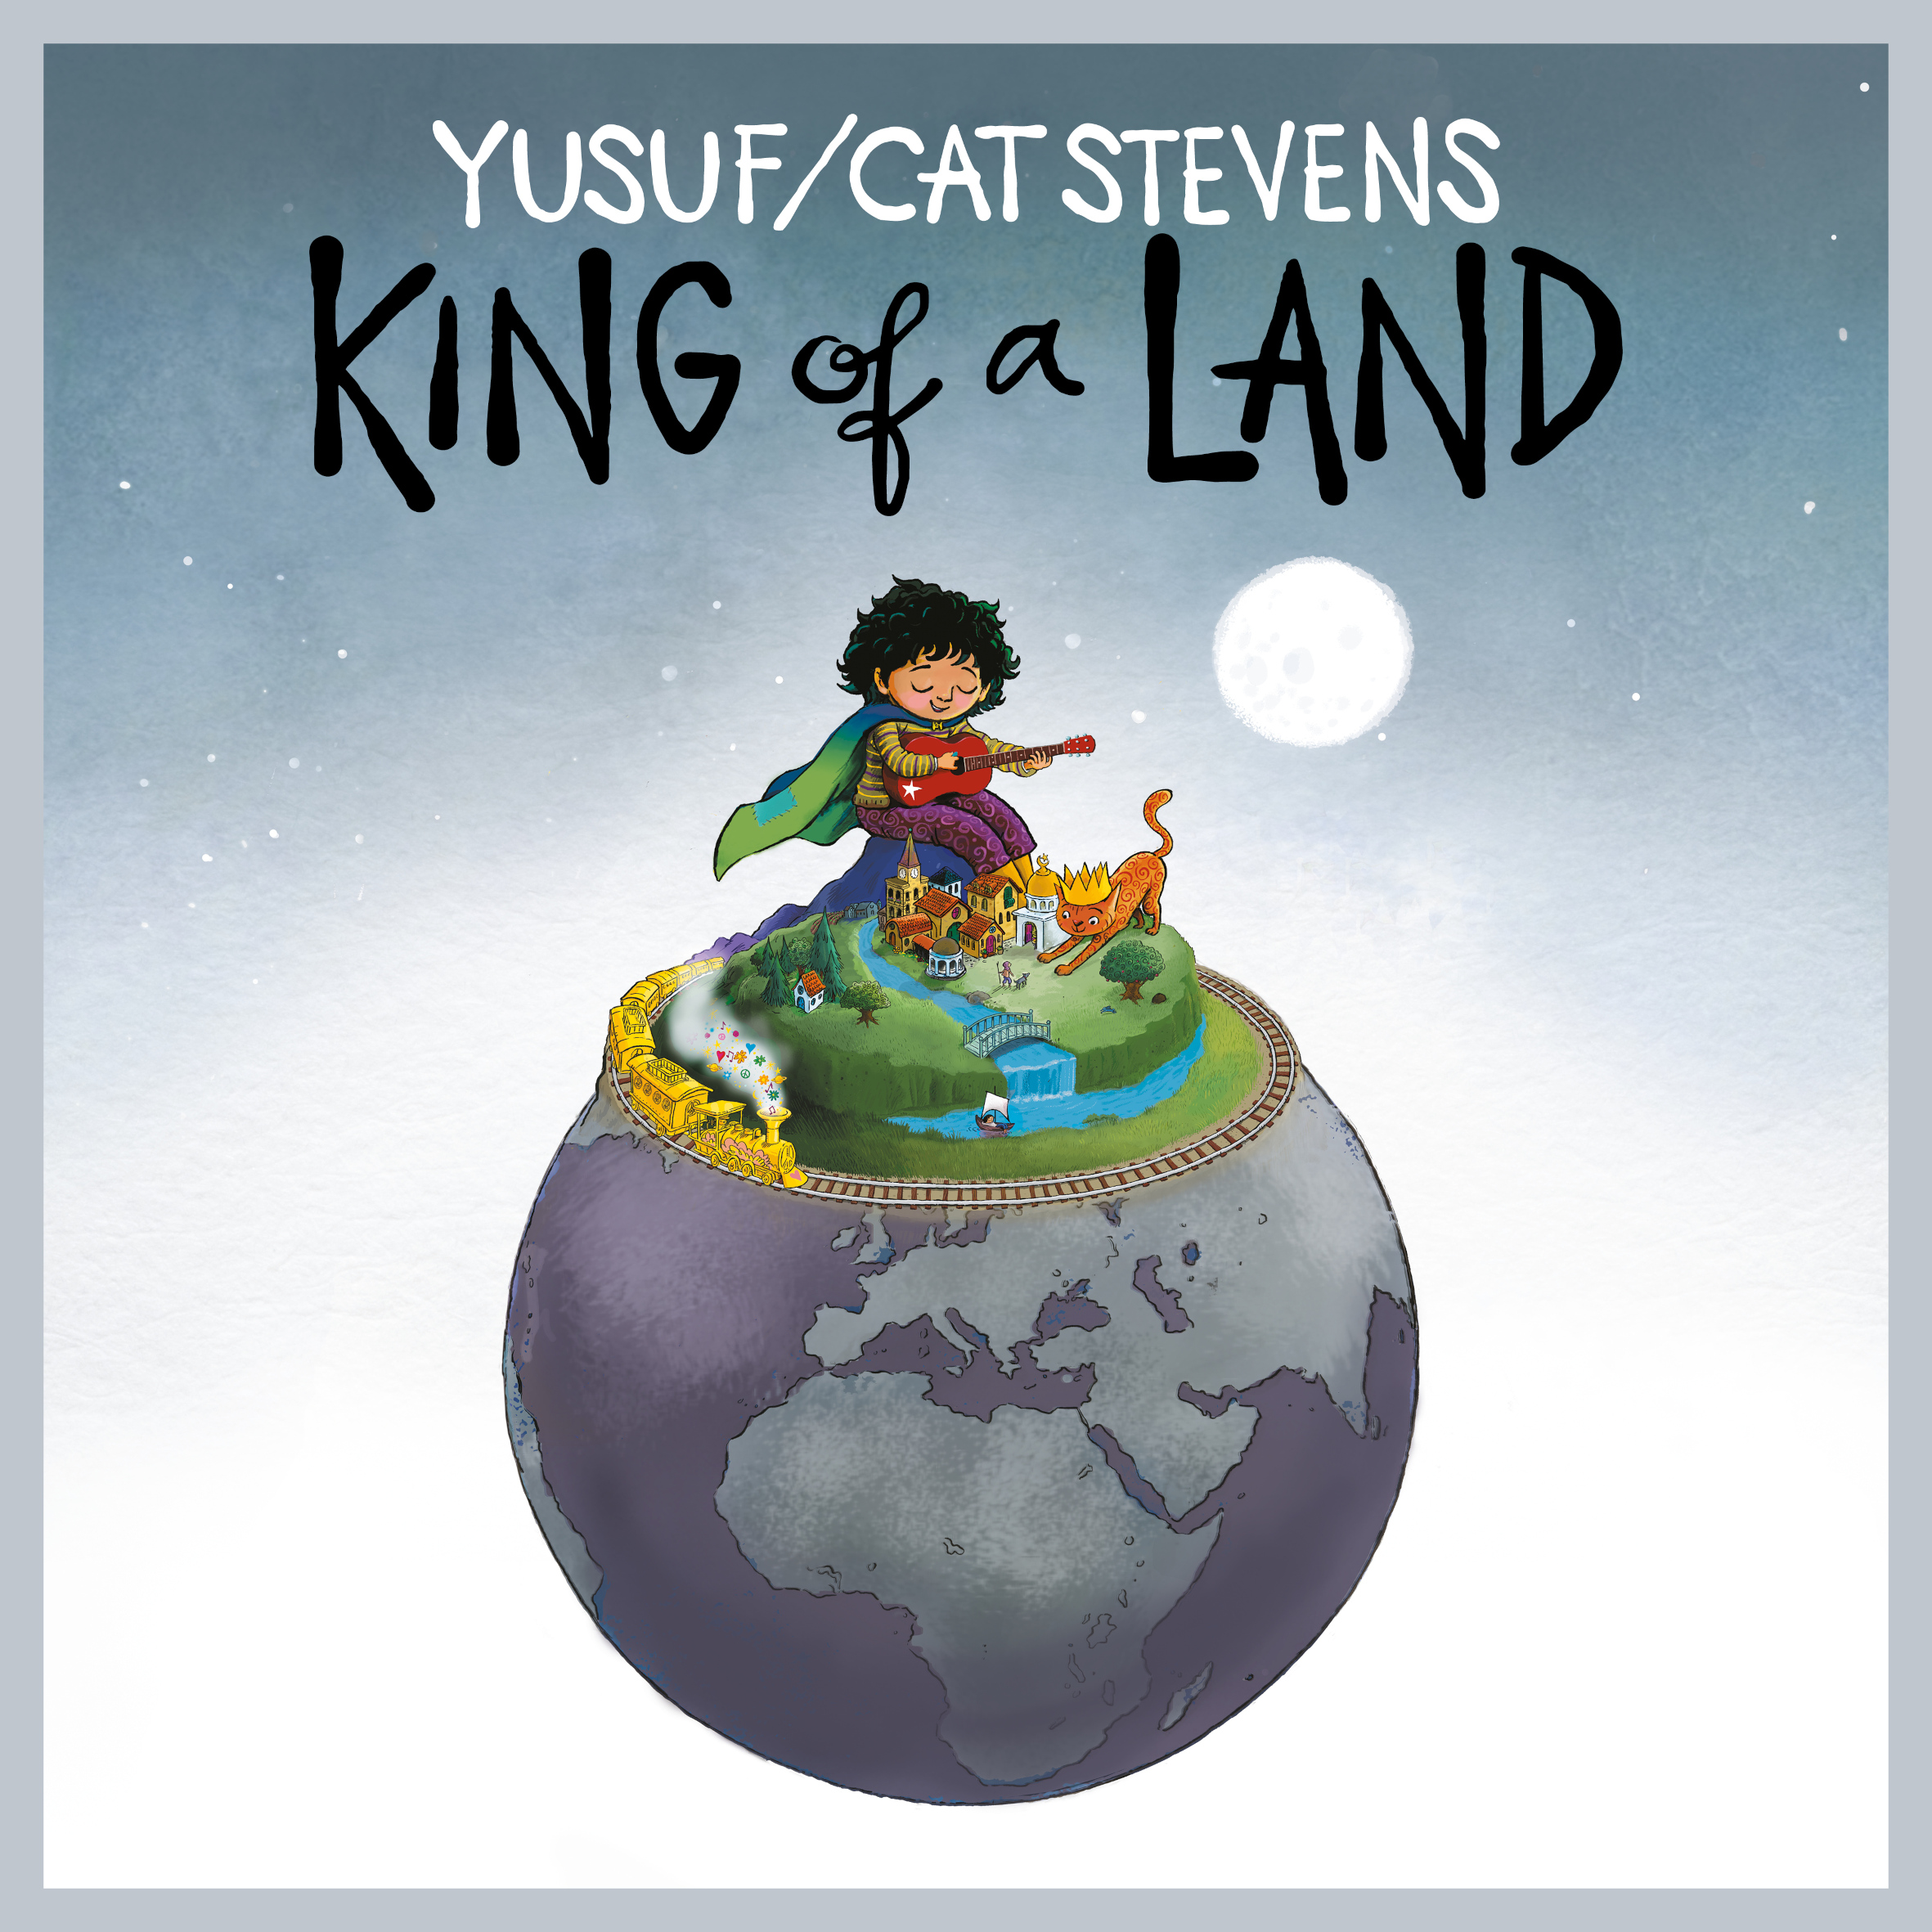 Yusuf/Cat Stevens annuncia il nuovo album in studio “King of a Land